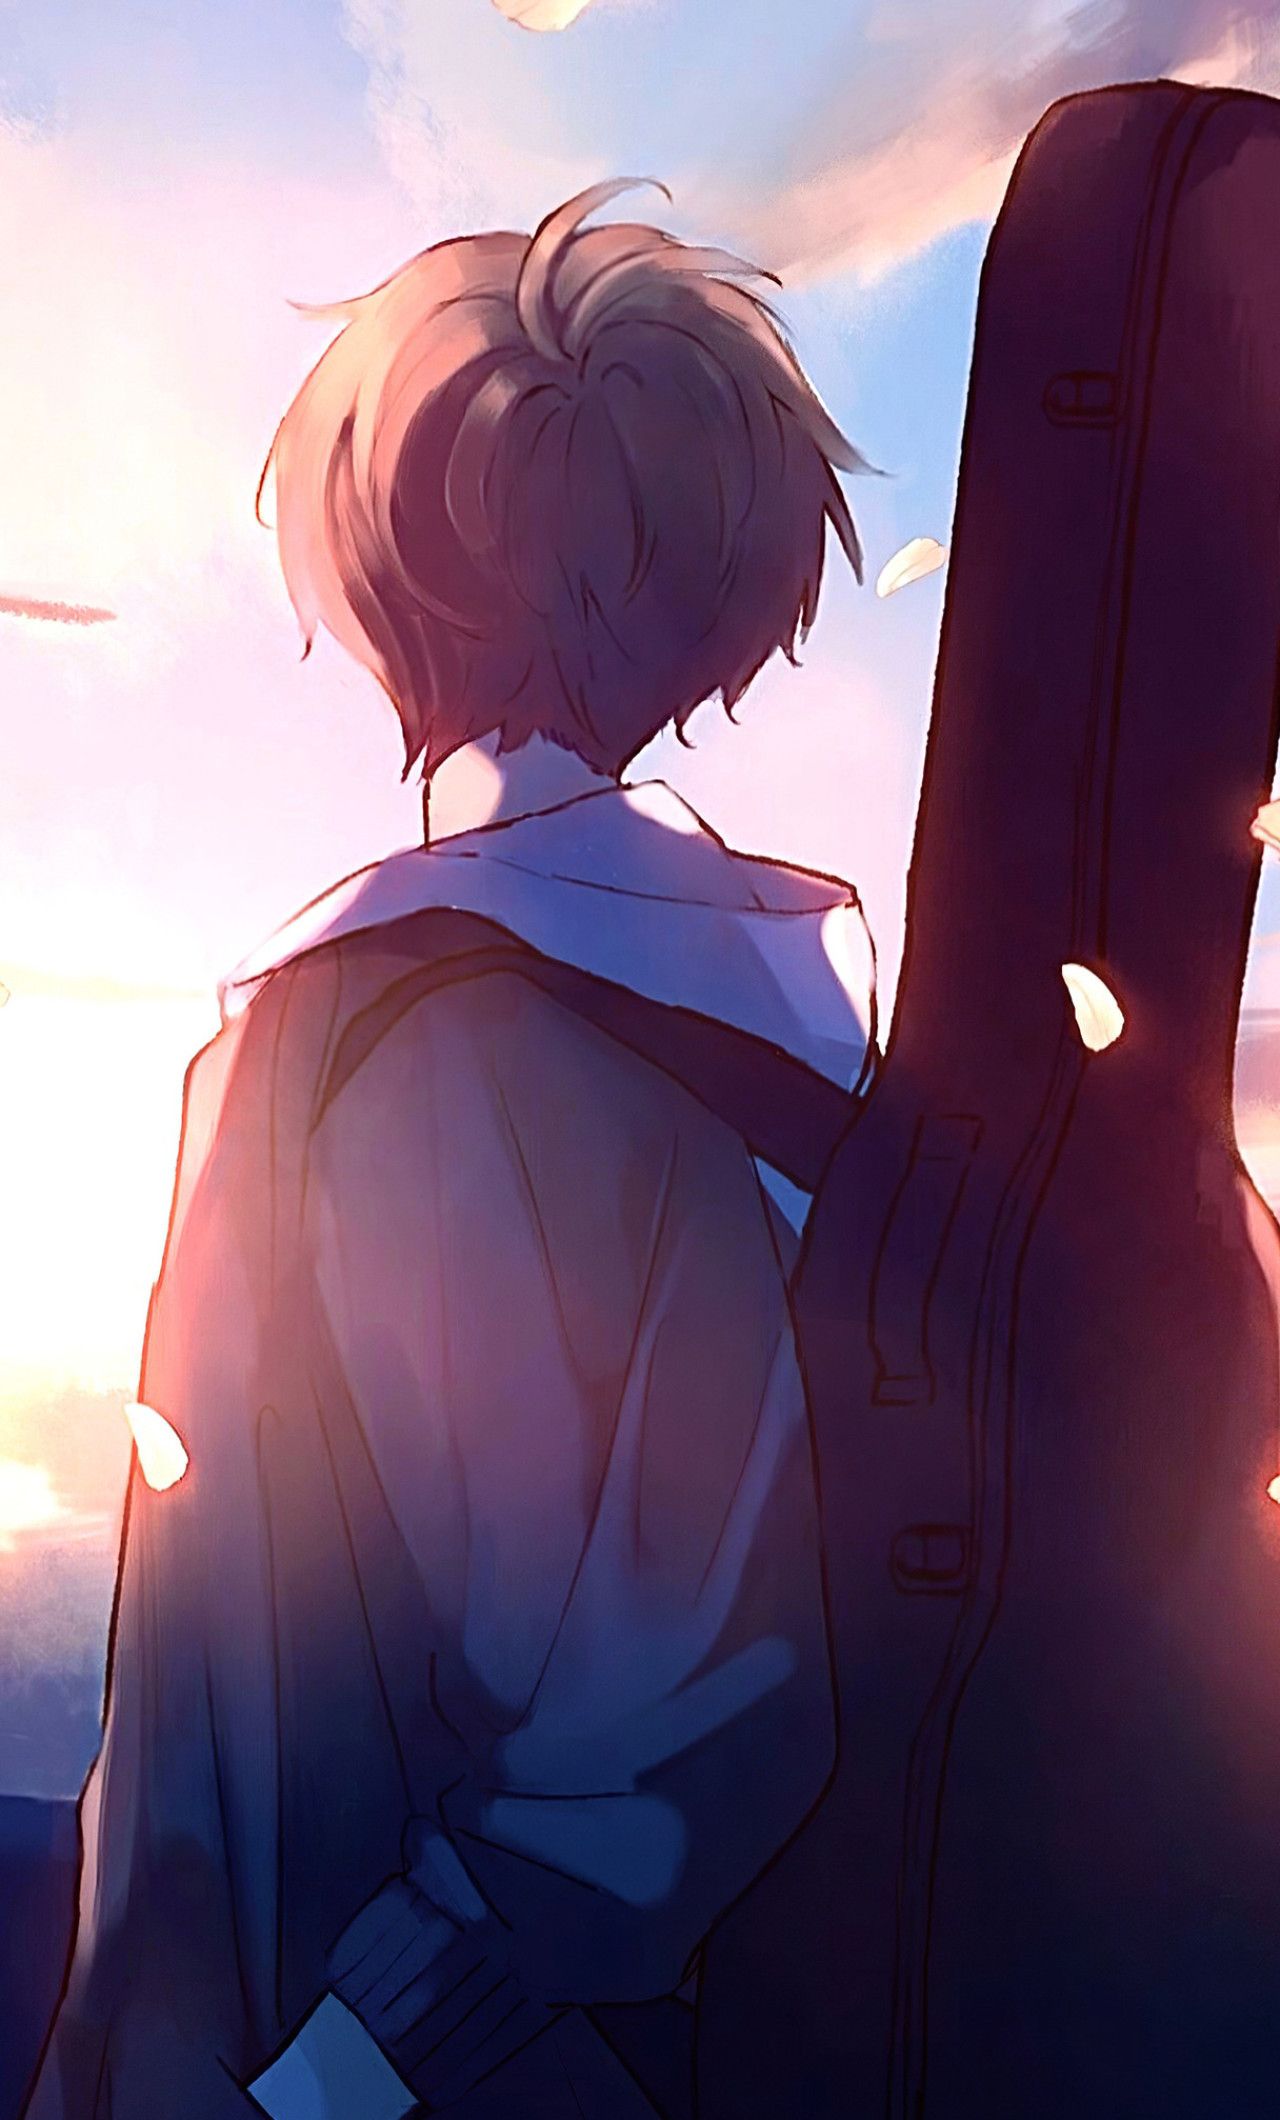 Download 95+ Gratis Wallpaper Anime Boy Terbaik - Background ID